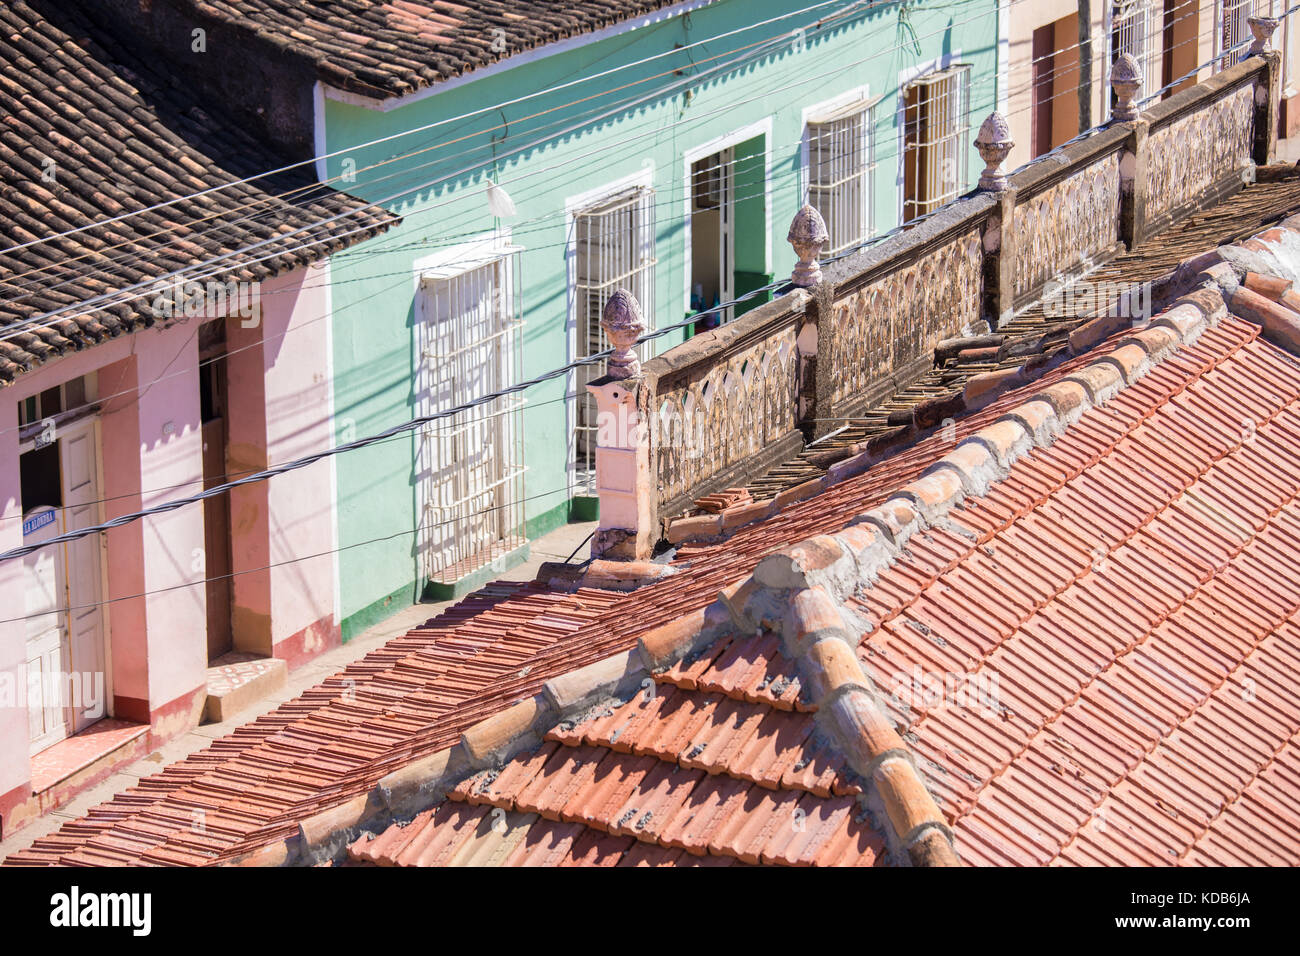 Schönen kolonialen Architektur entlang der gepflasterten Straßen von Trinidad, Kuba. Stockfoto